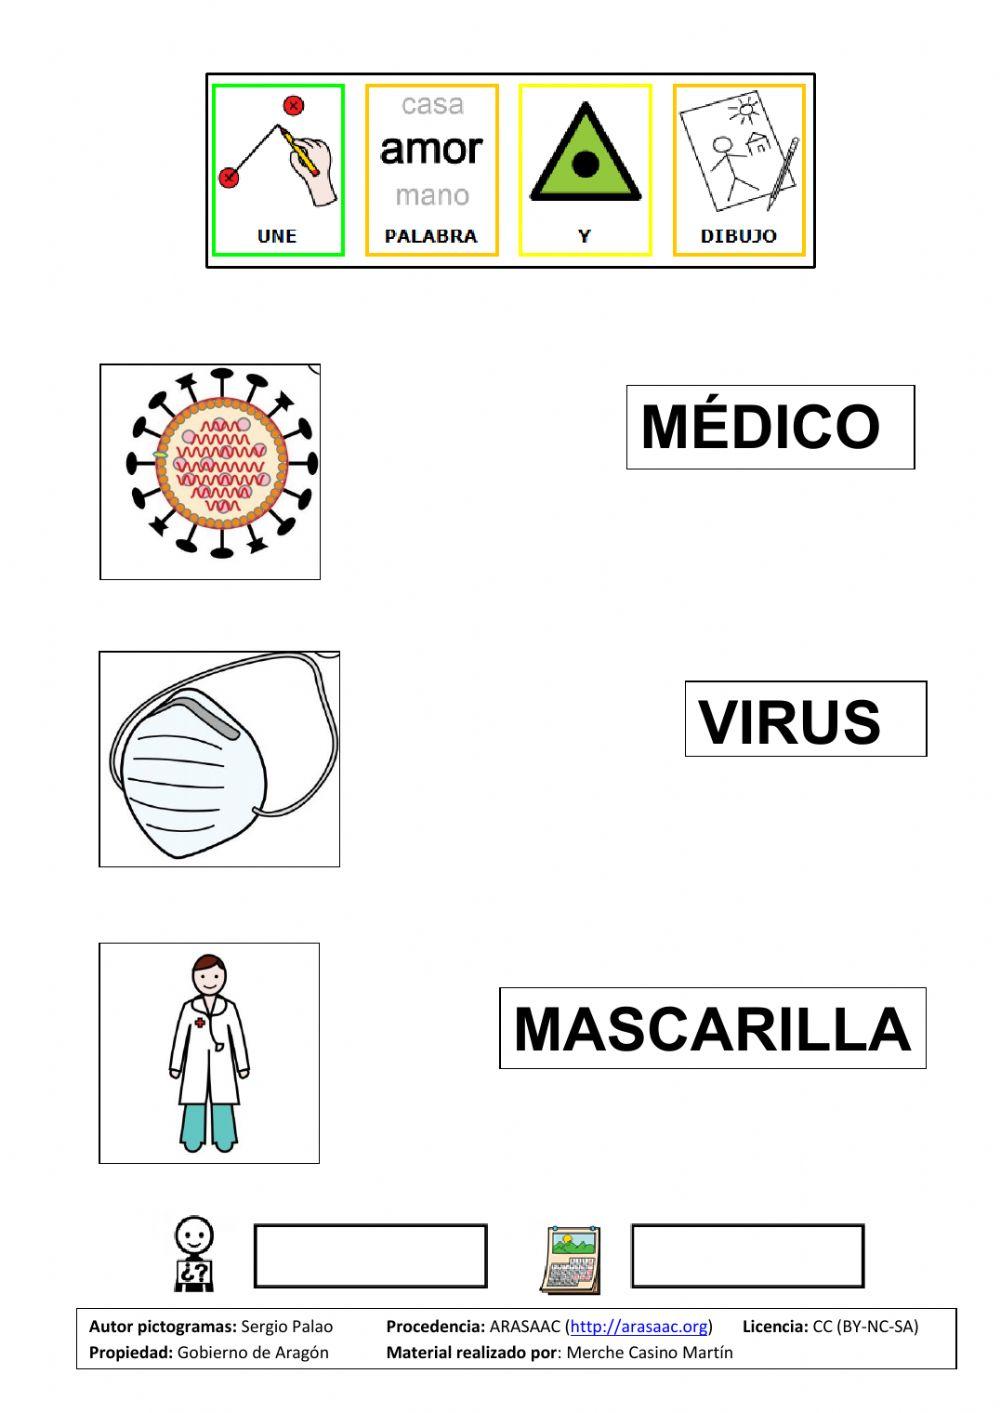 Unir-picto-palabra-coronavirus